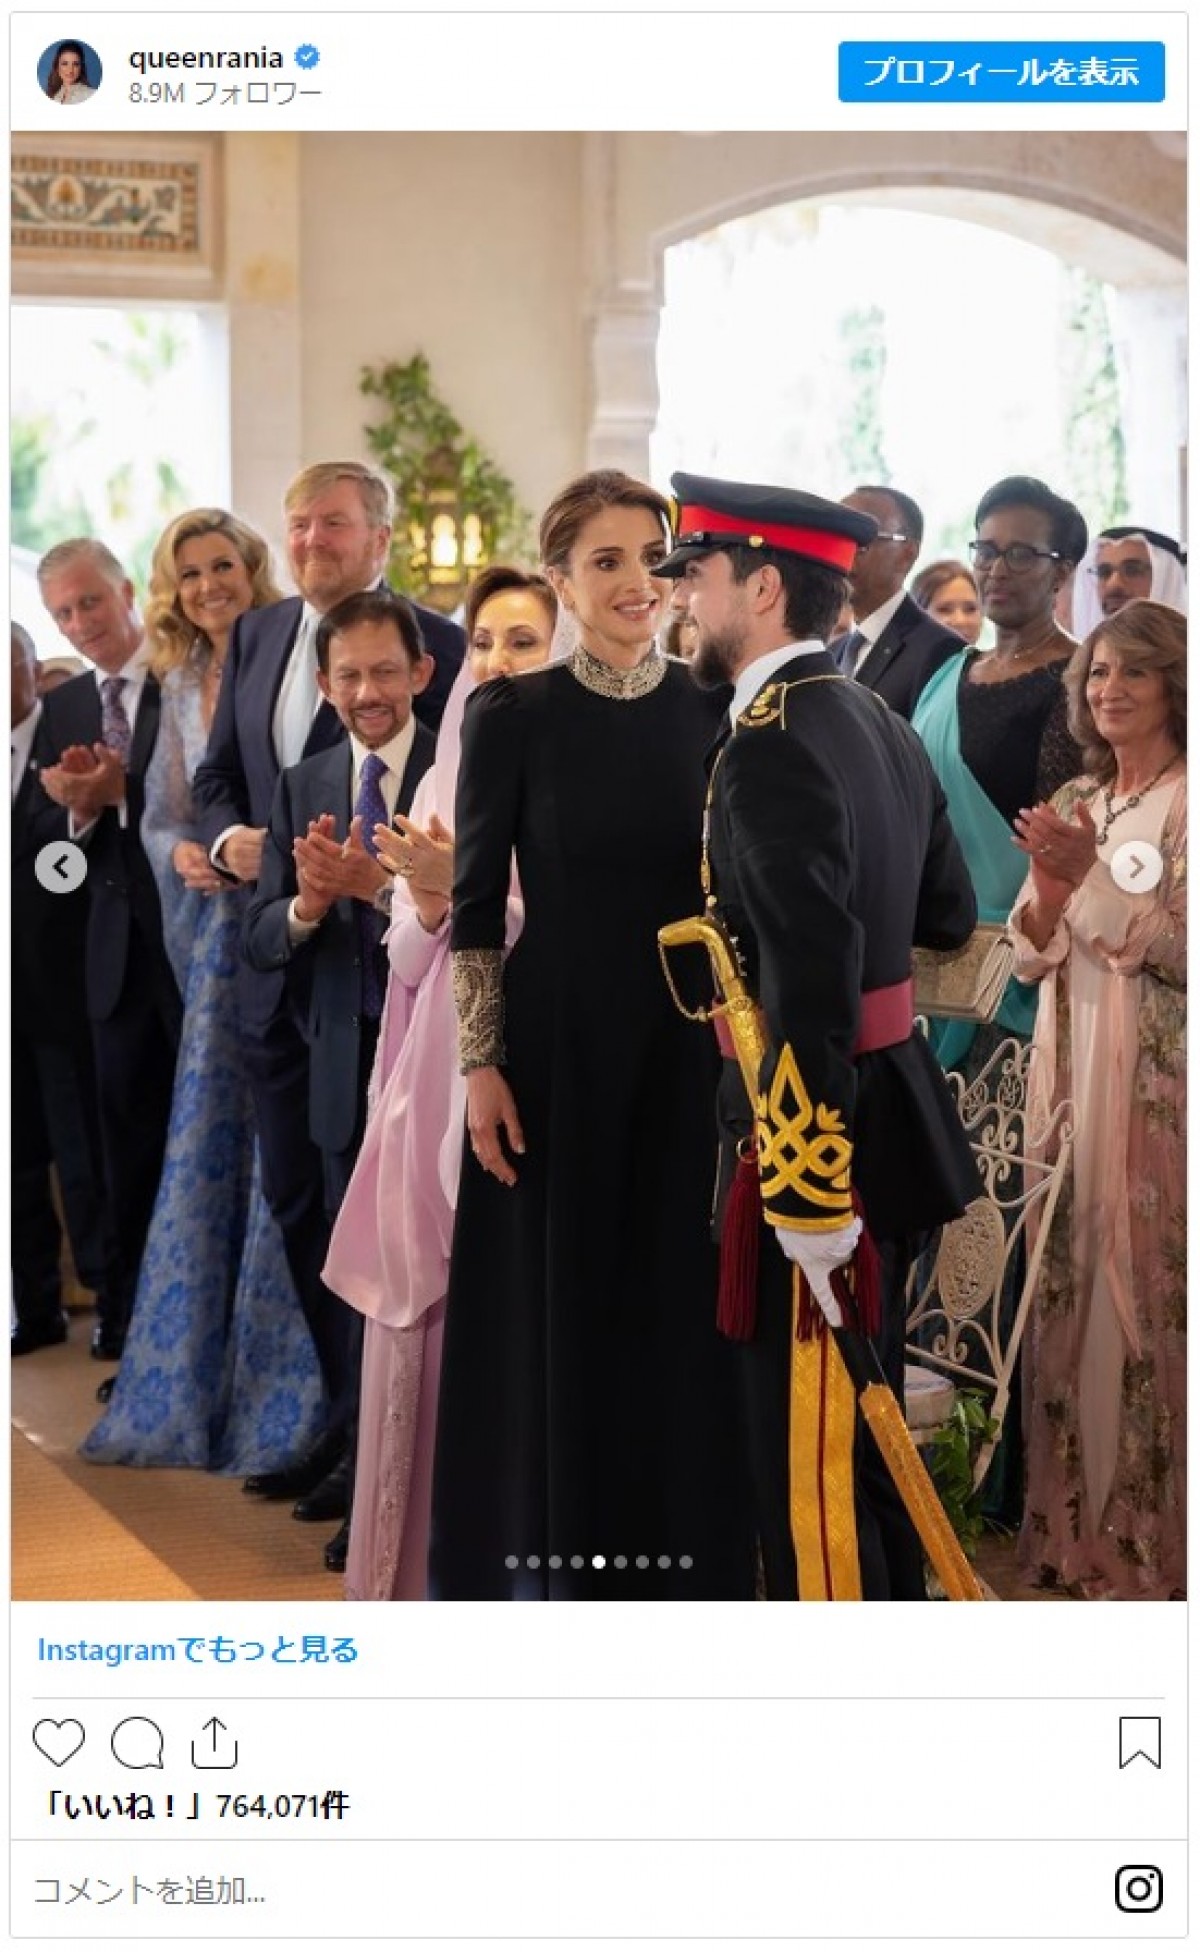 ヨルダン王室フセイン皇太子の結婚式が執り行われる